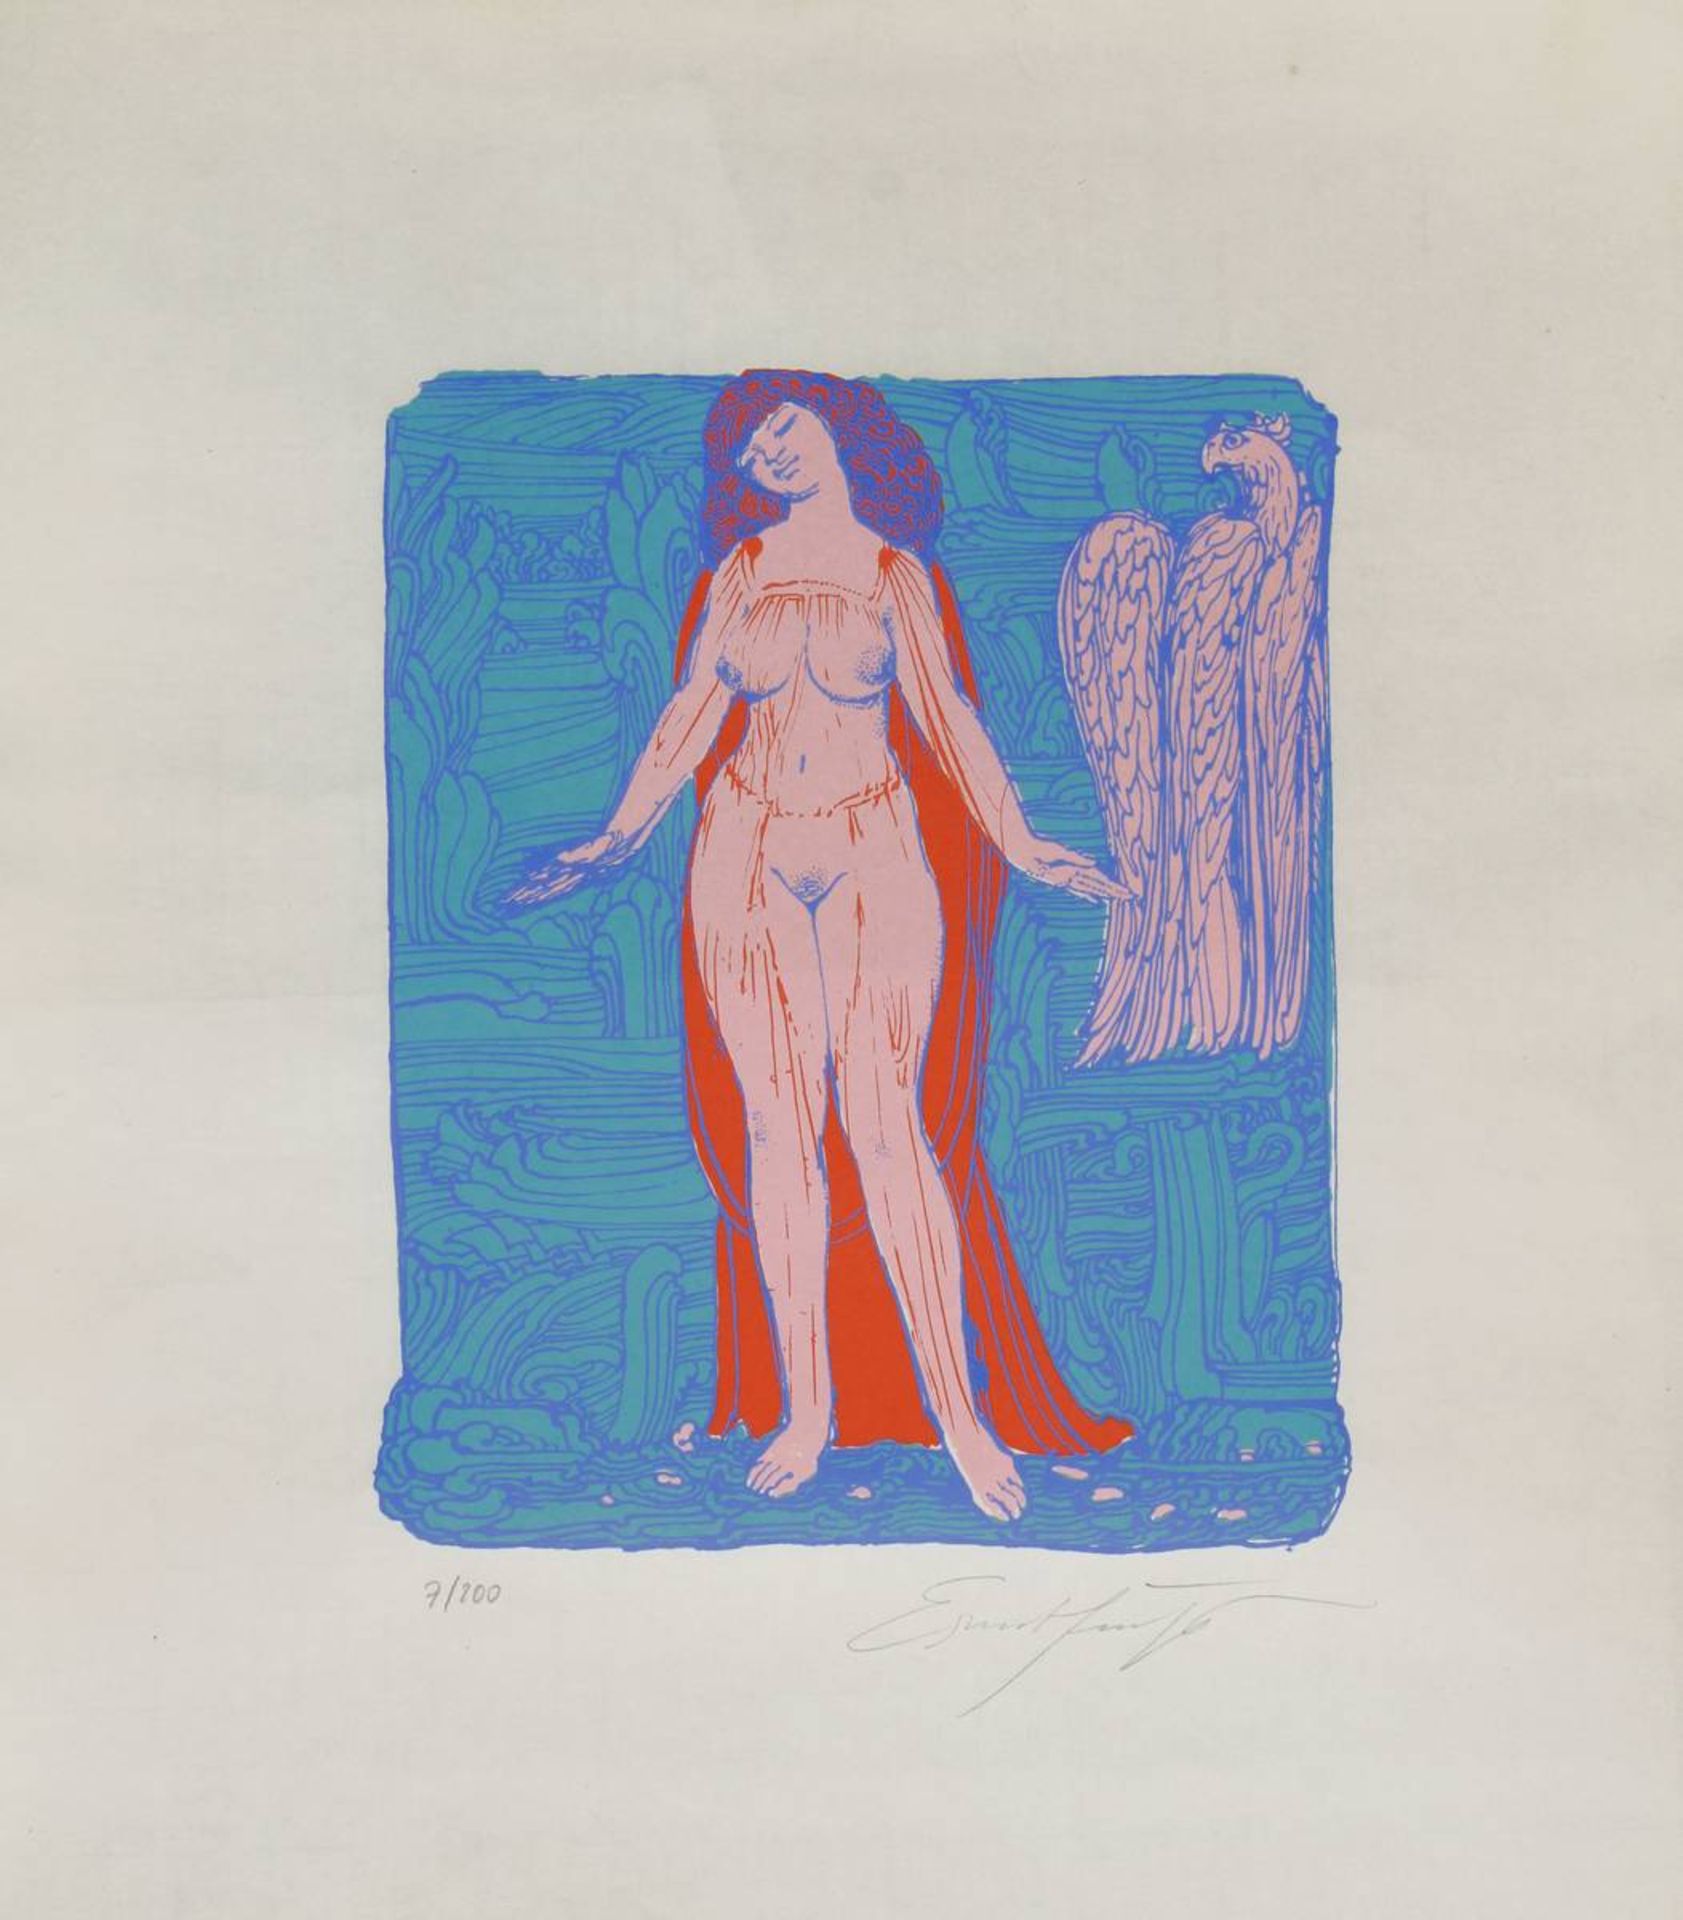 Fuchs, Ernst (Wien 1930 - 2015 Wien), Weiblicher Akt mit Adler, Farblithografie, num. 7/200, unt.